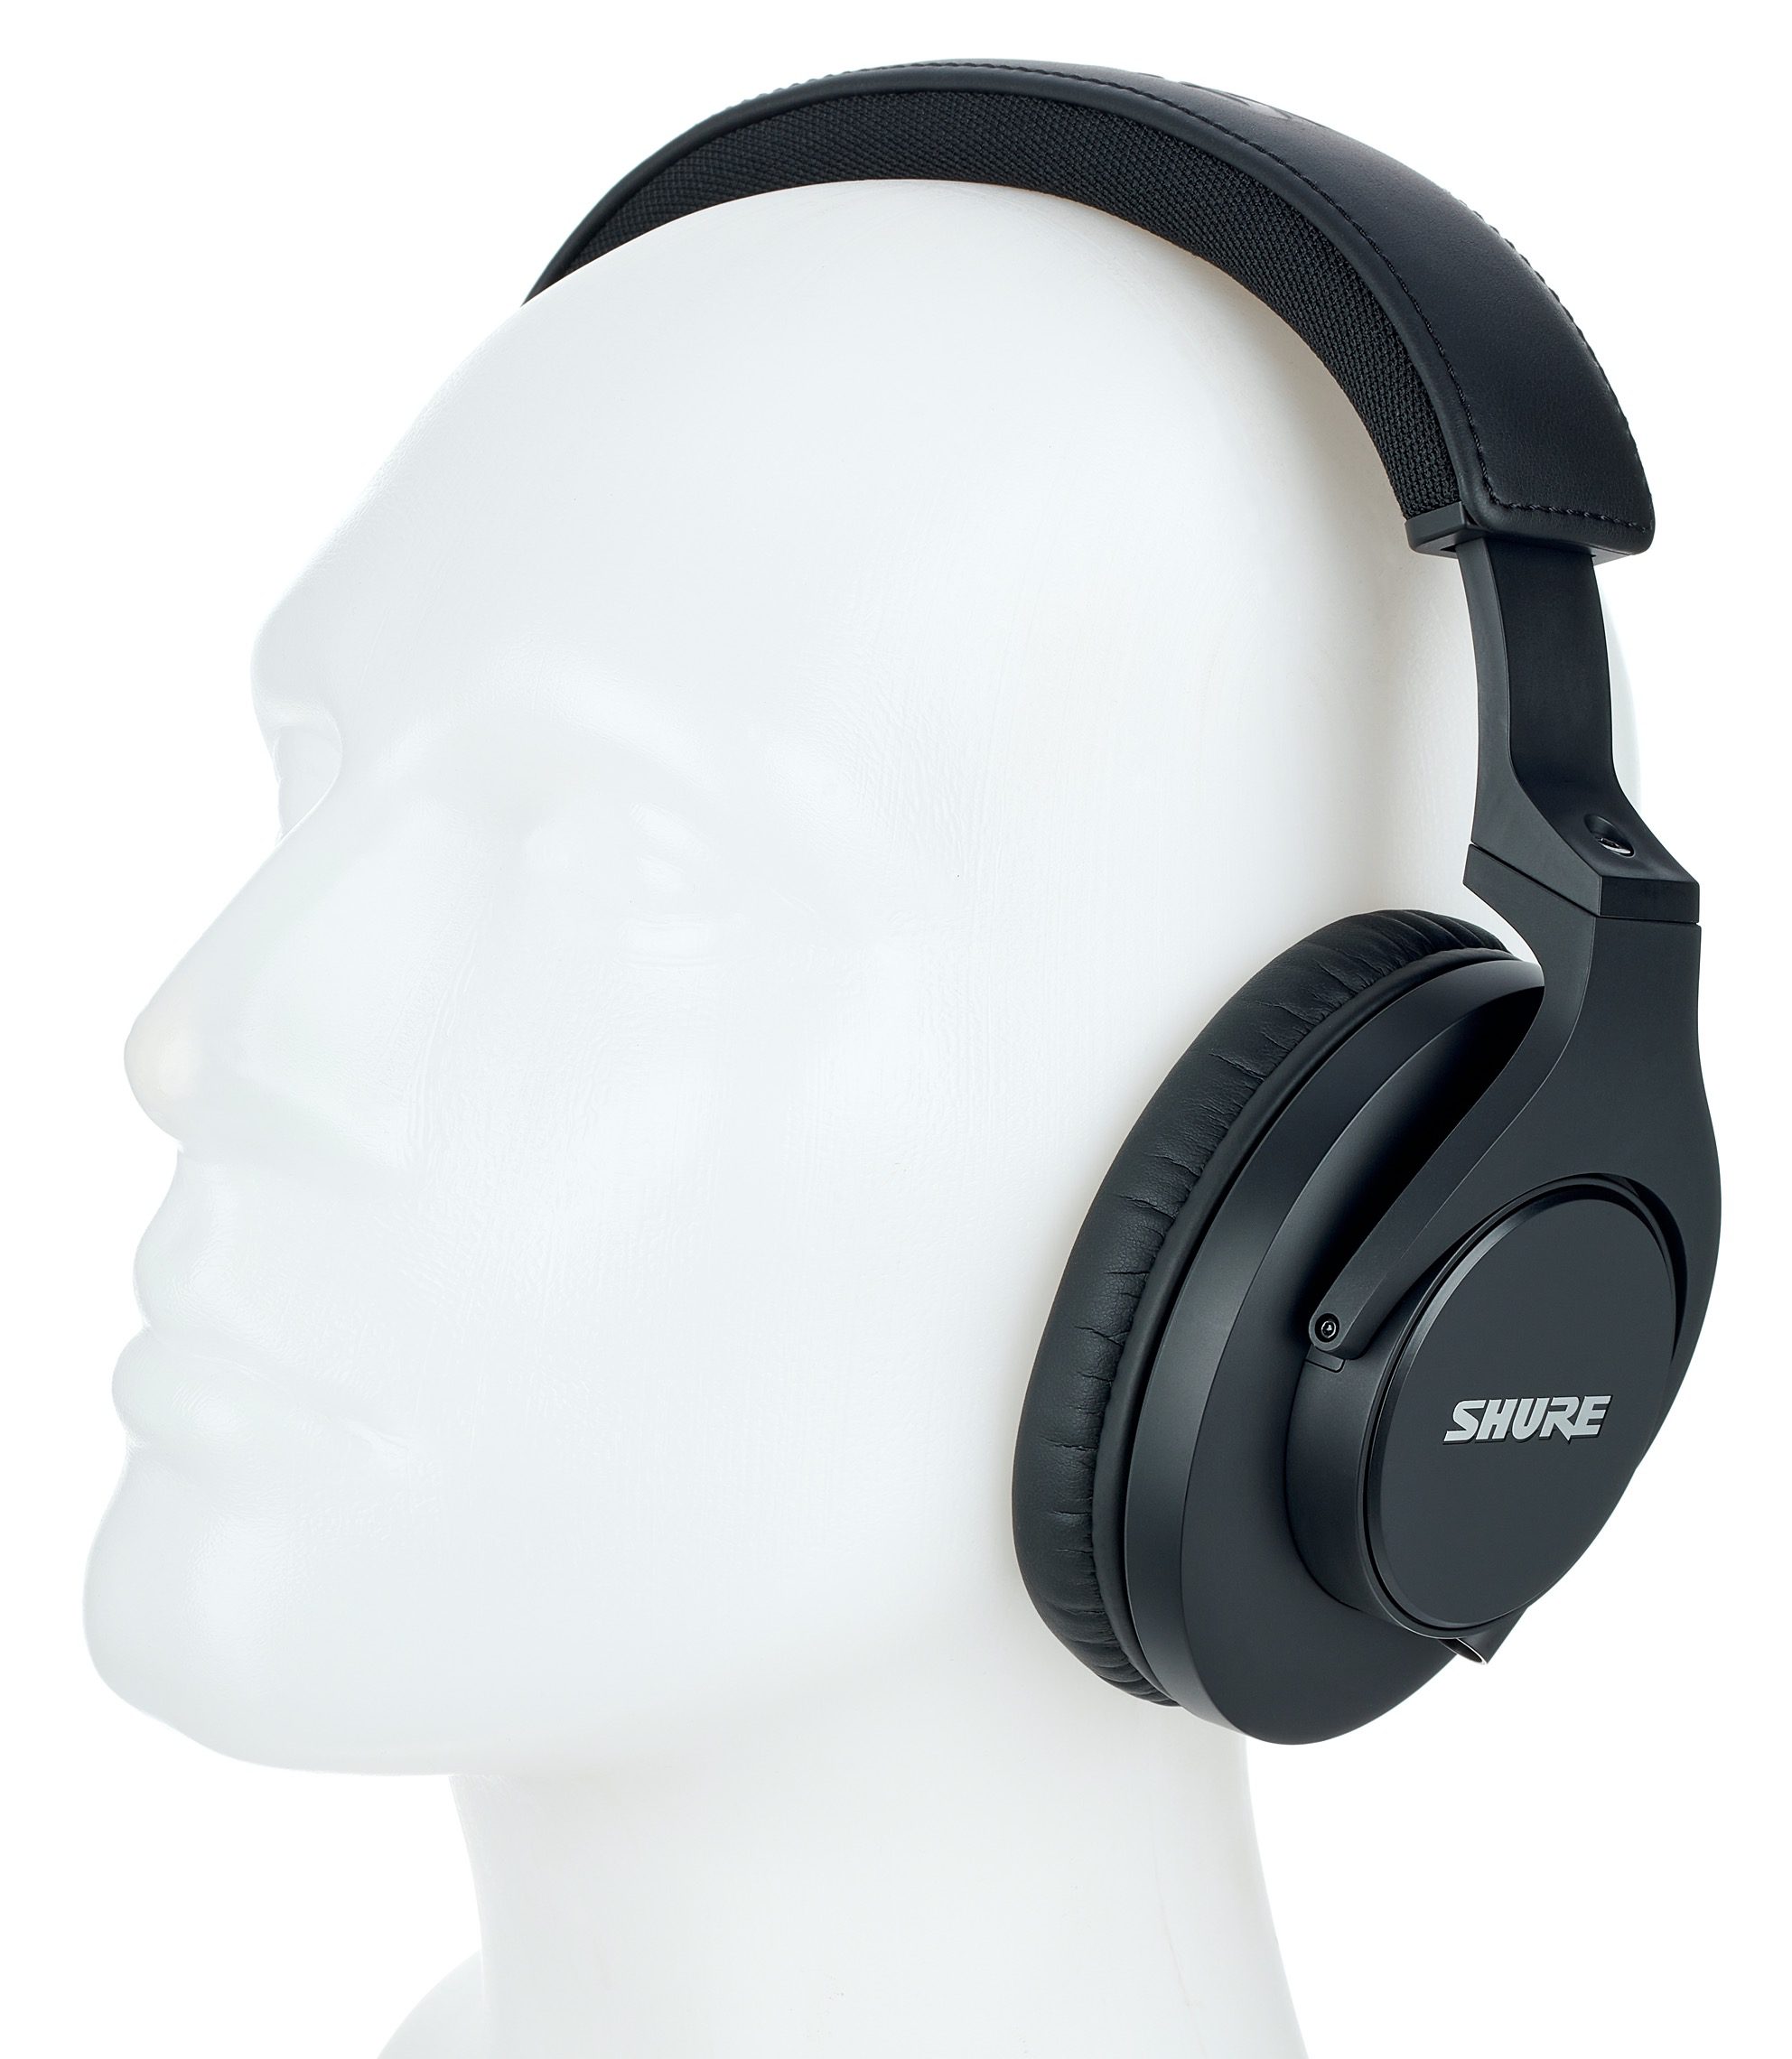 Shure SRH440A Review | headphonecheck.com